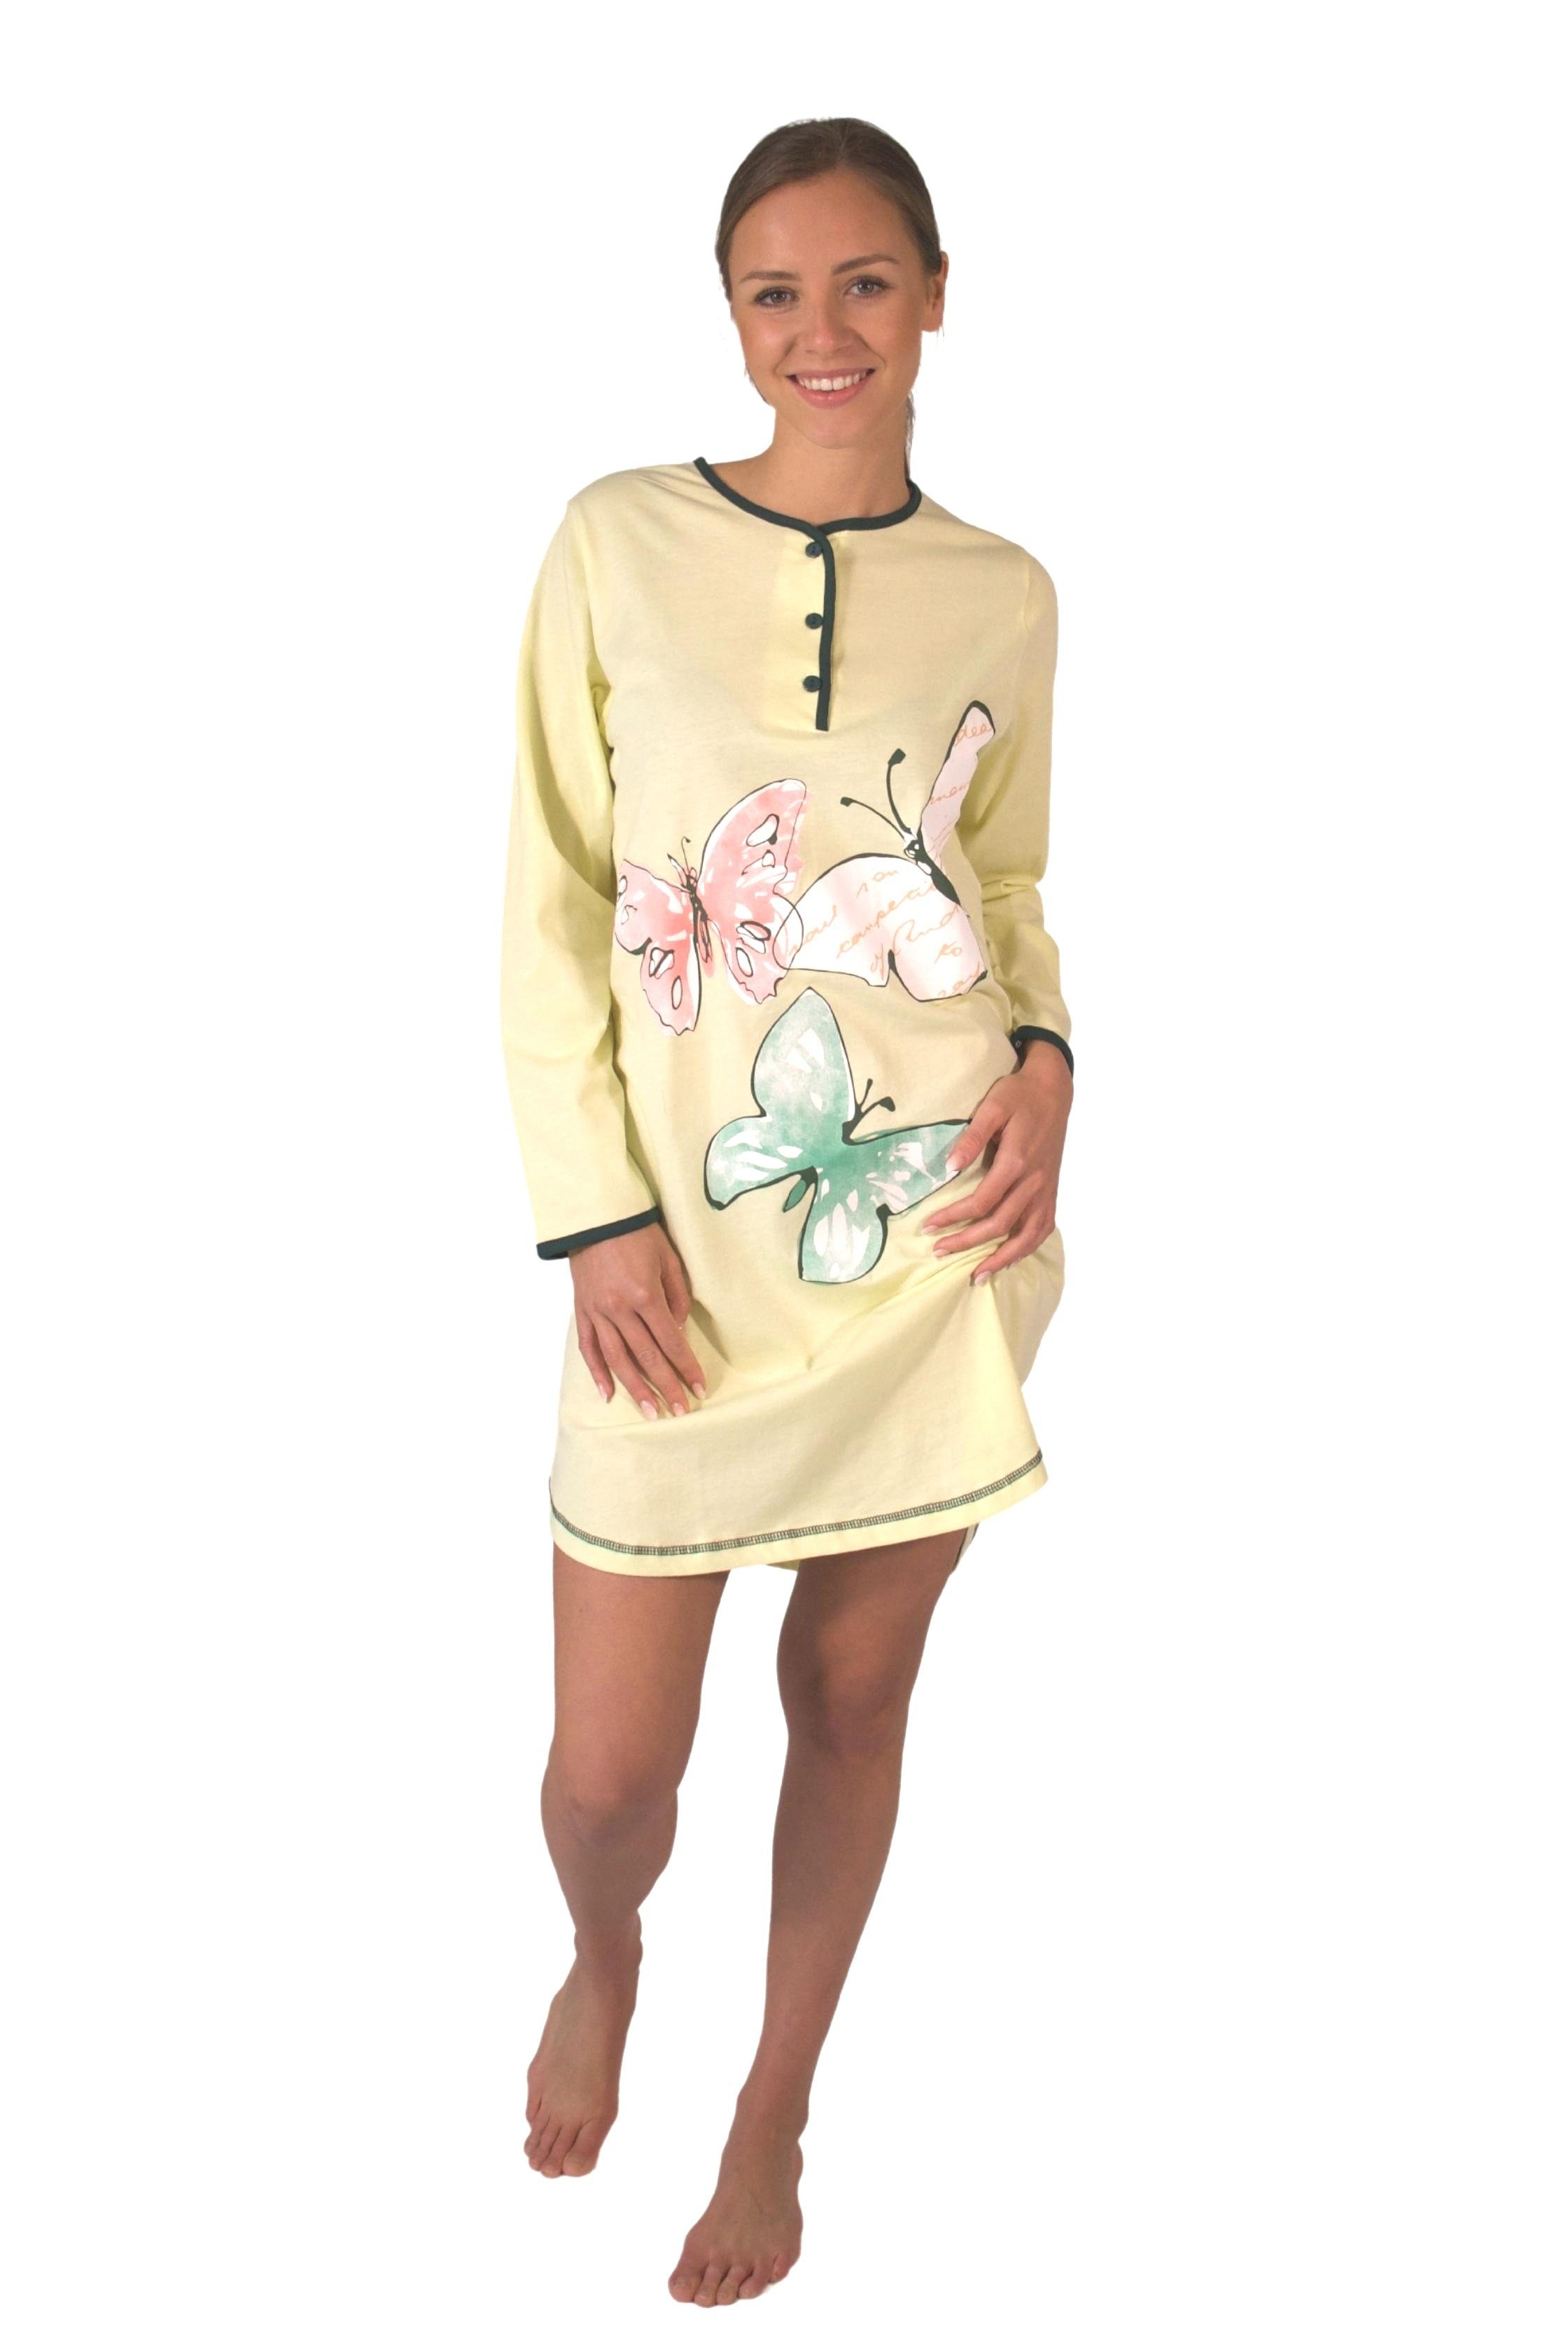 Consult-Tex Nachthemd Damen BaumwolleJersey Nachthemd tragen DW720 zu mingrün bequem